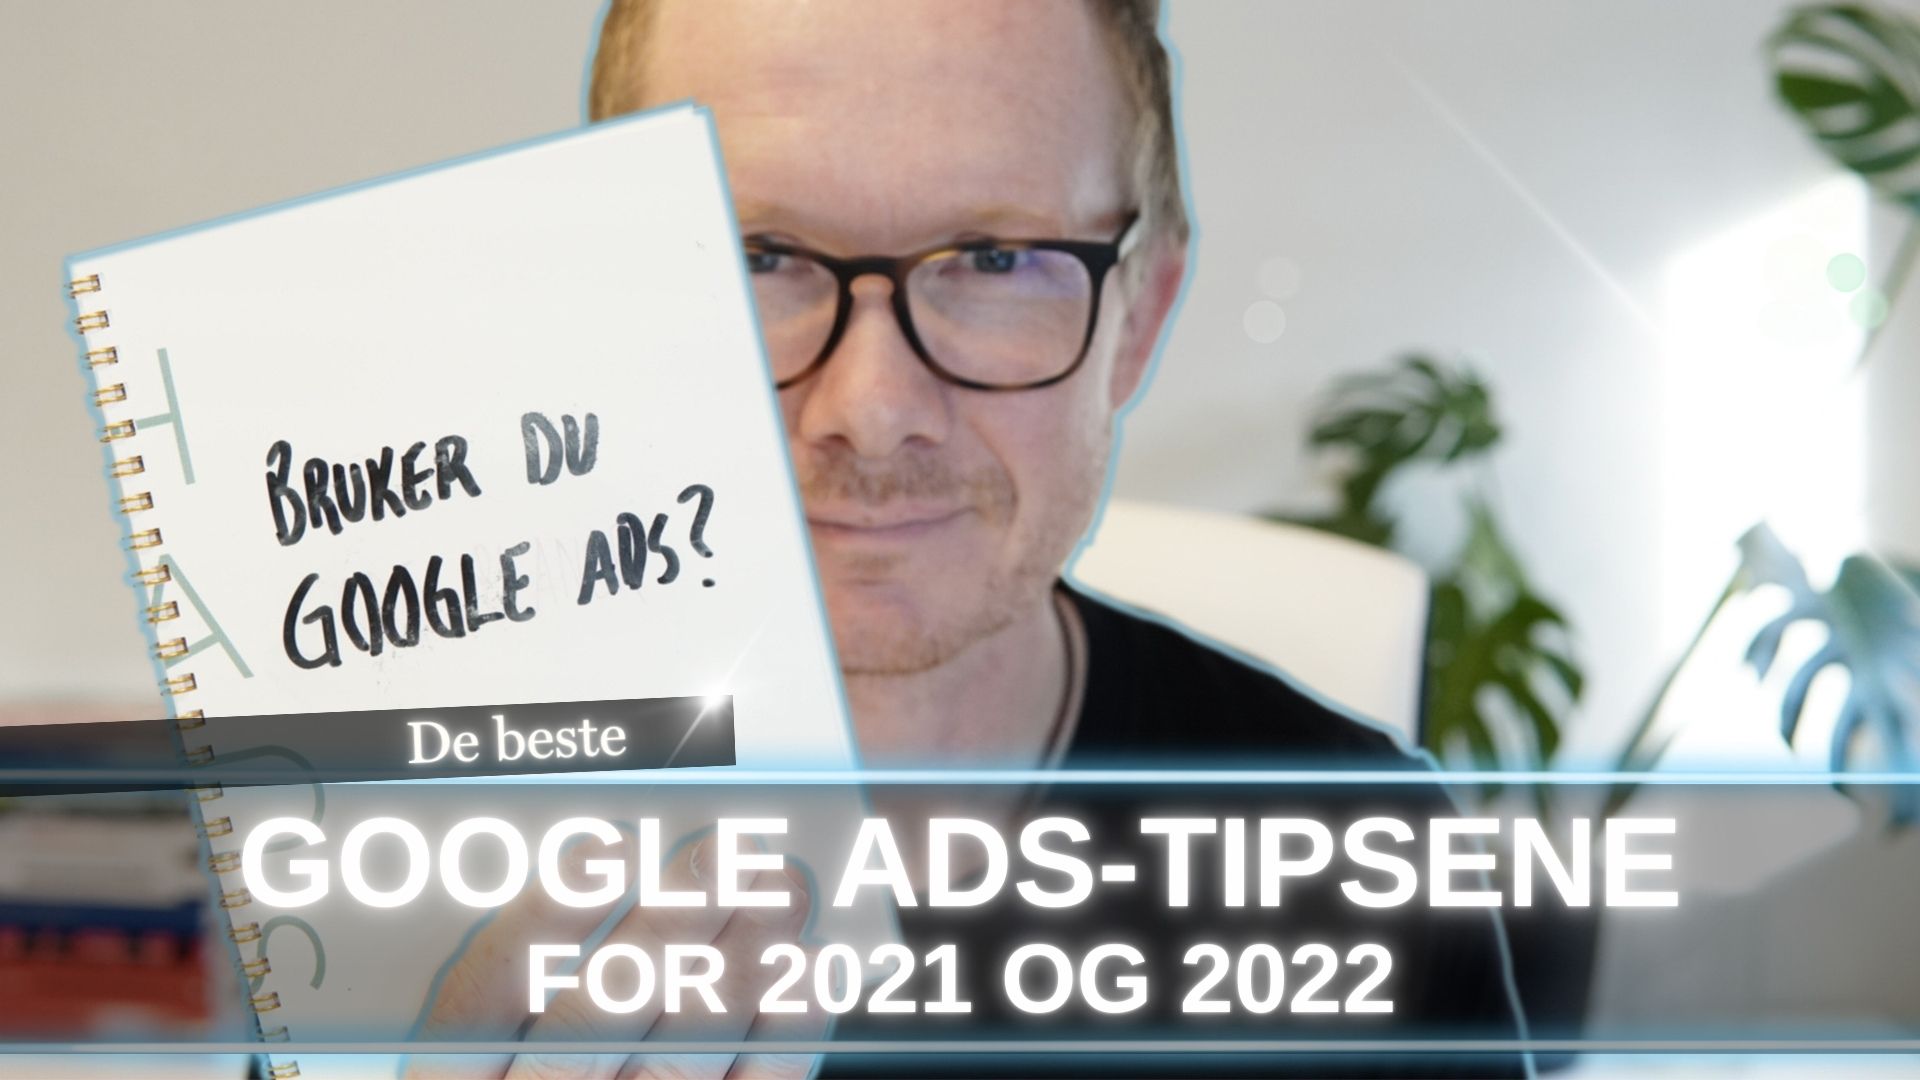 hauspodden - google ads tips 2021 og 2022